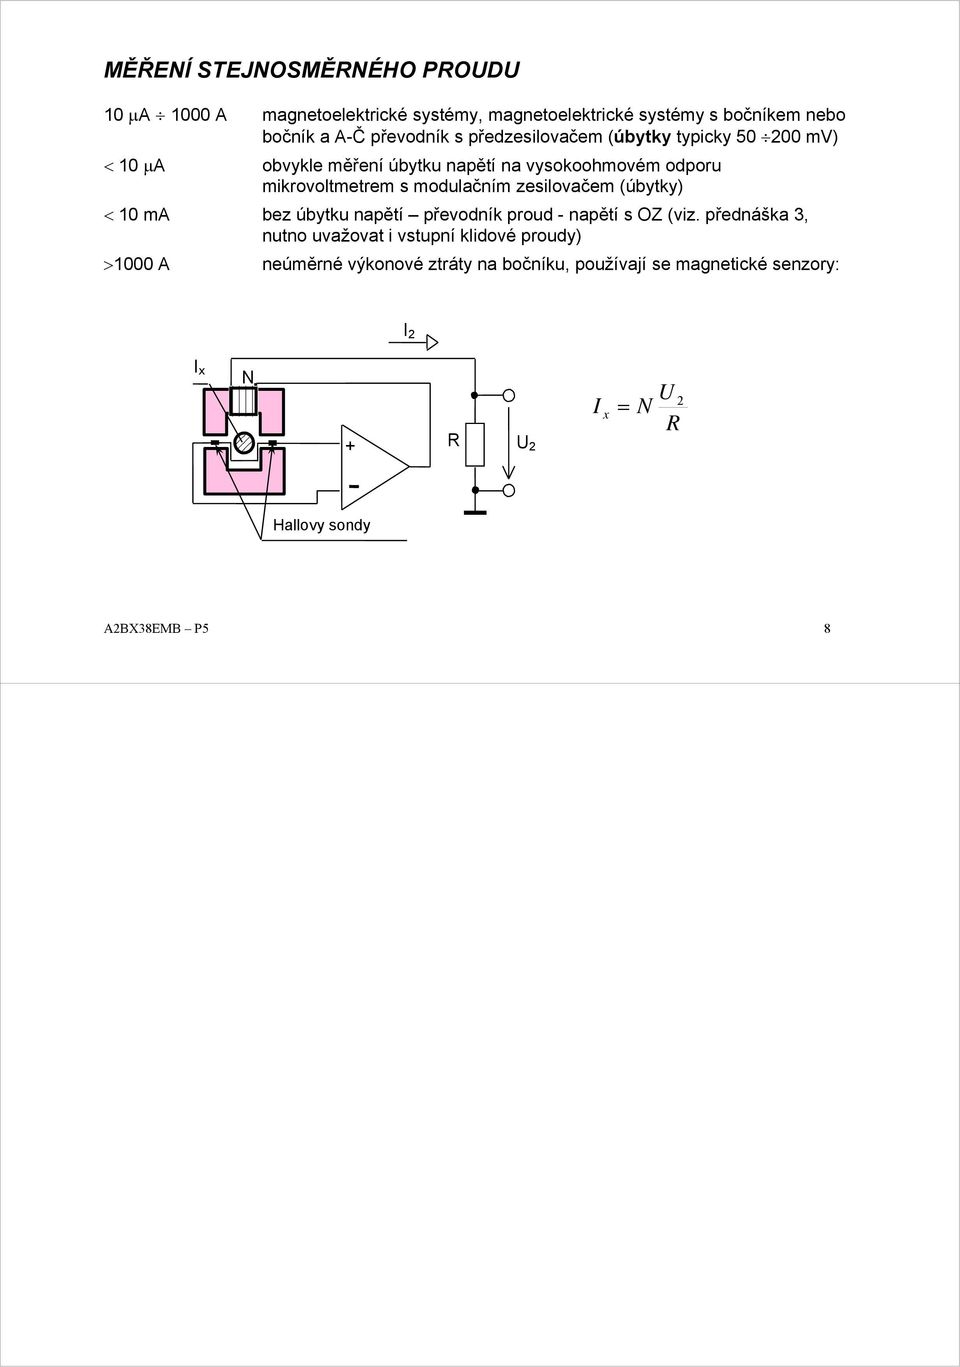 modulačním zesilovačem (úbytky) < 10 m bez úbytku napětí převodník proud - napětí s OZ (viz.